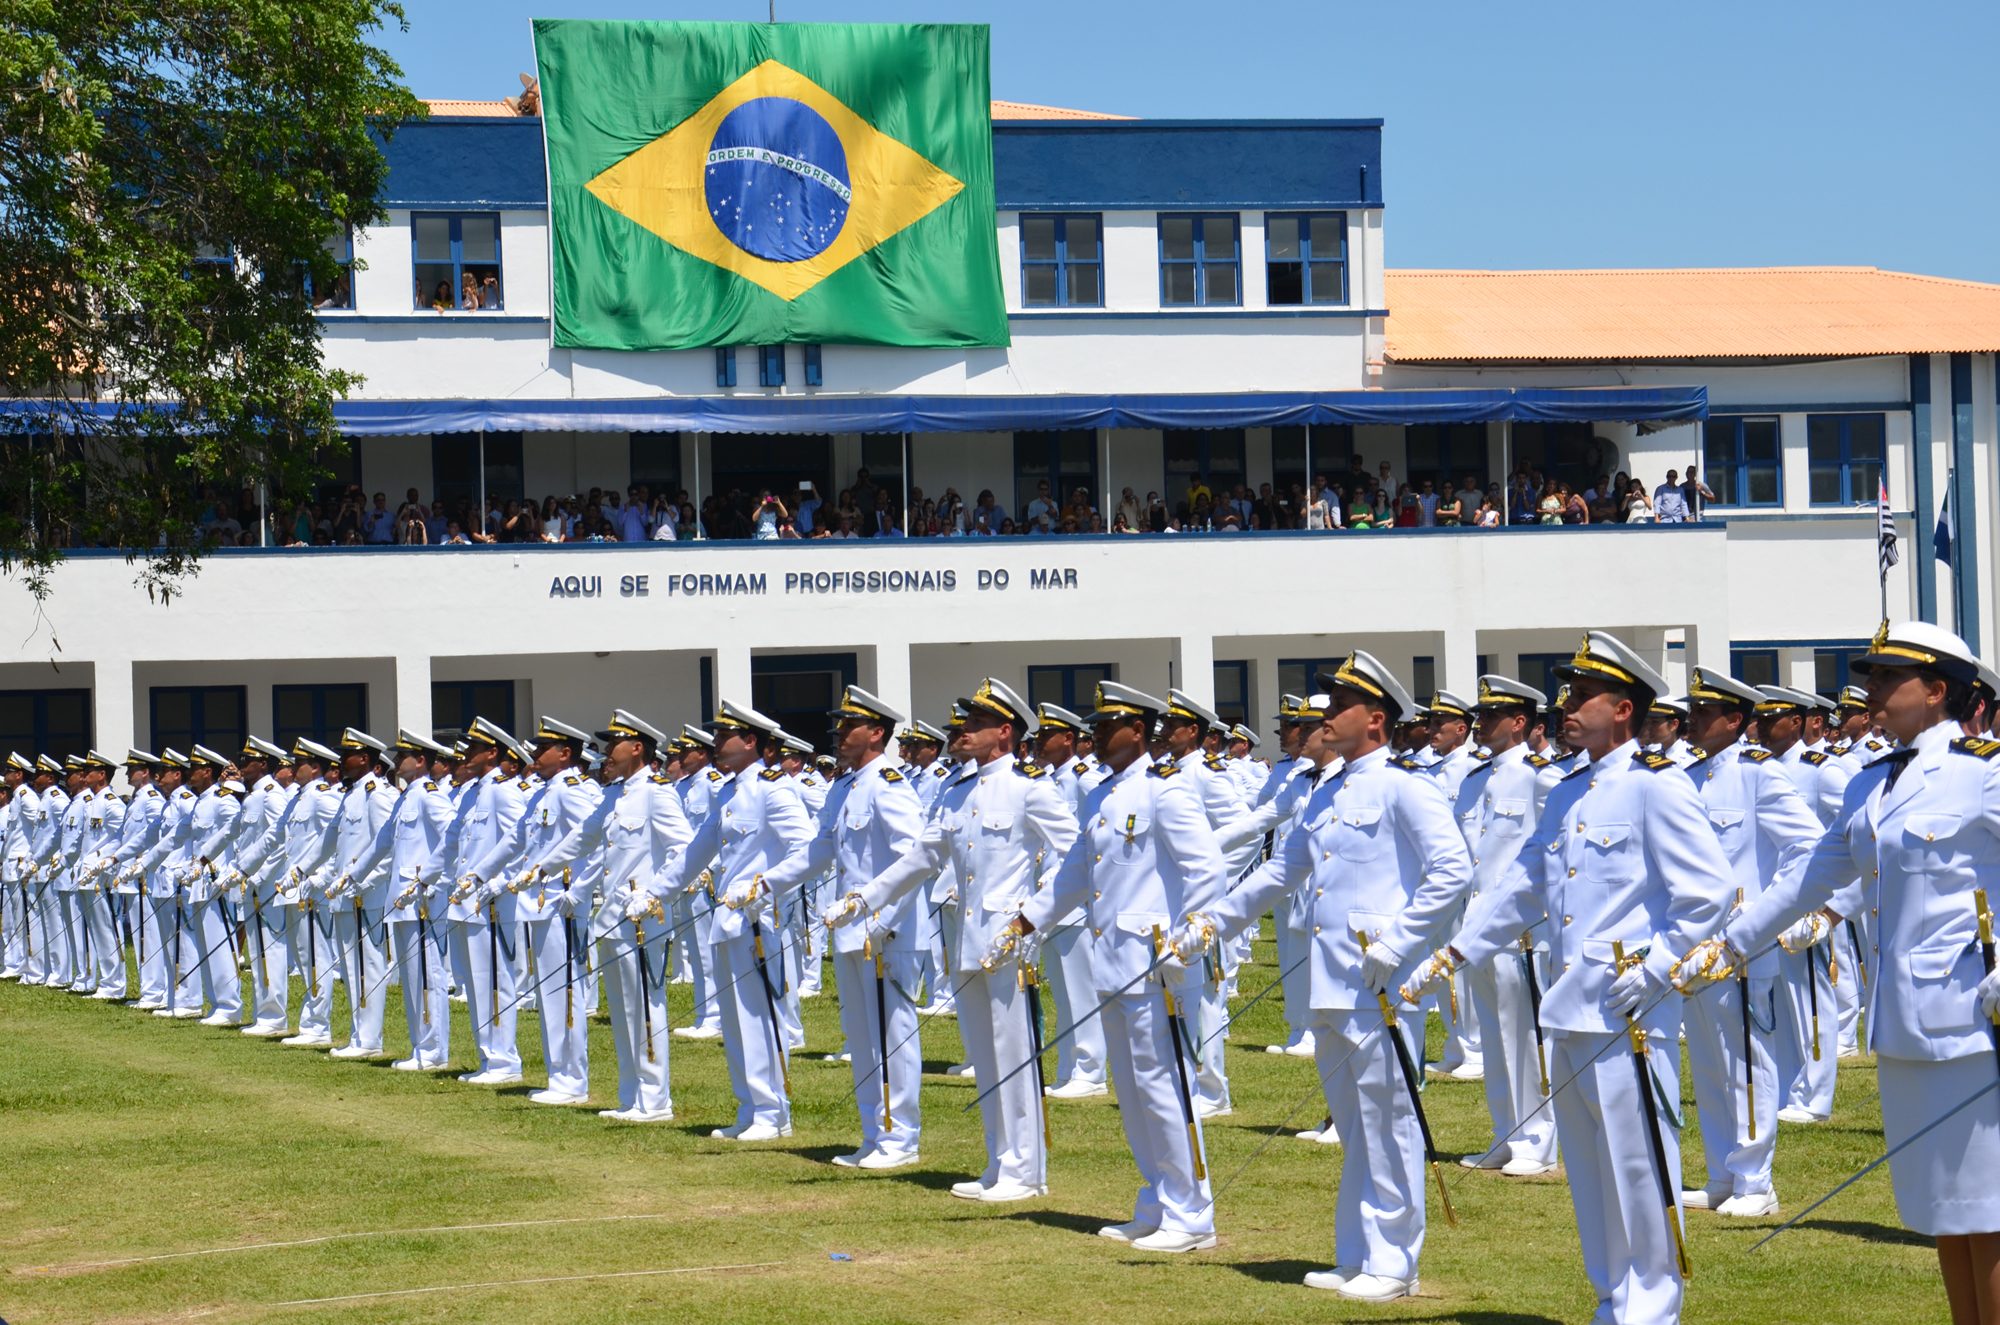 Processo seletivo para oficial temporário da Marinha do Brasil se encerra nesta quinta, 7